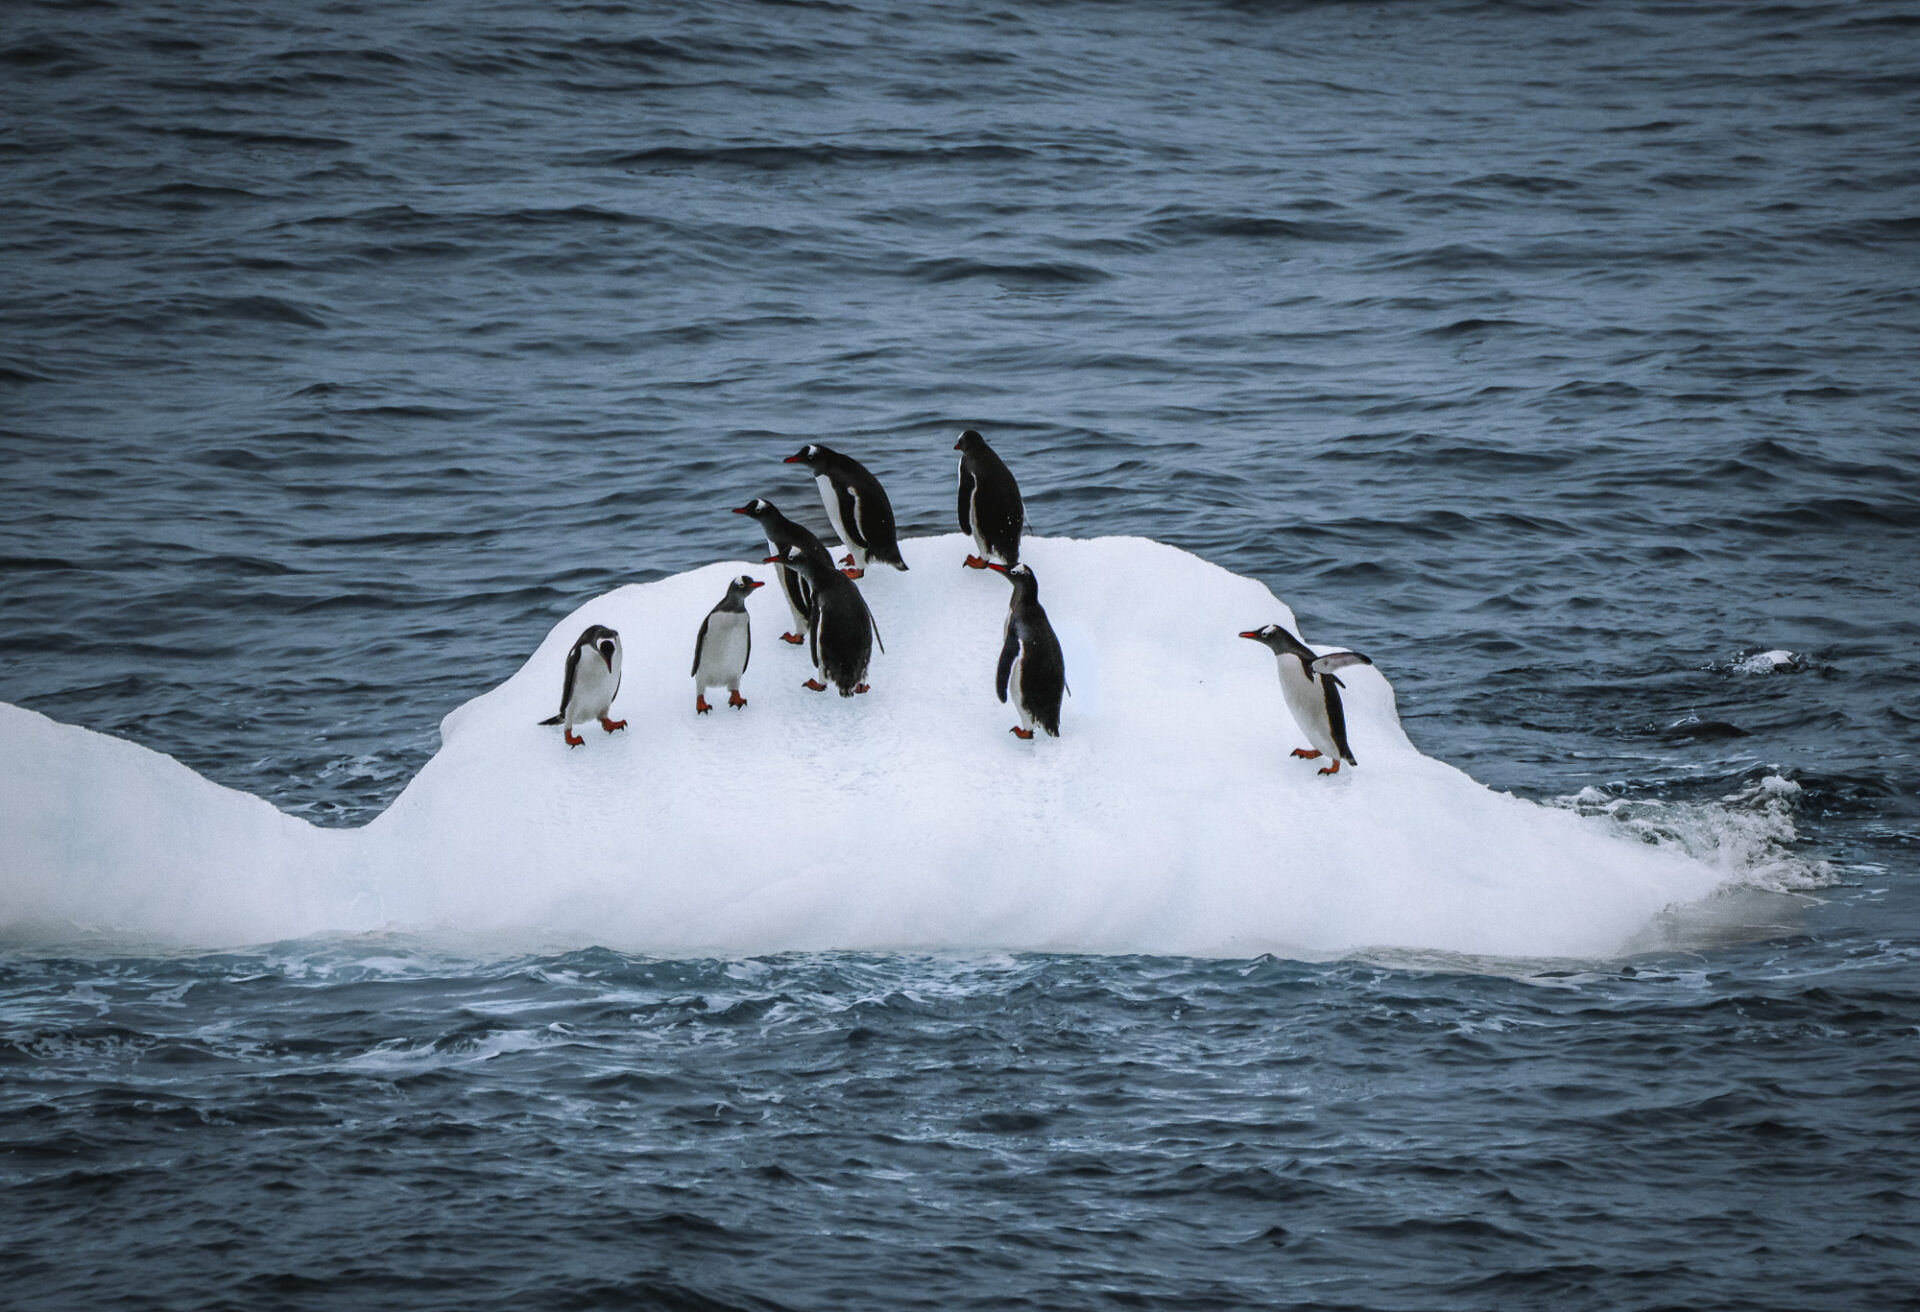 Spotting penguins on an iceberg